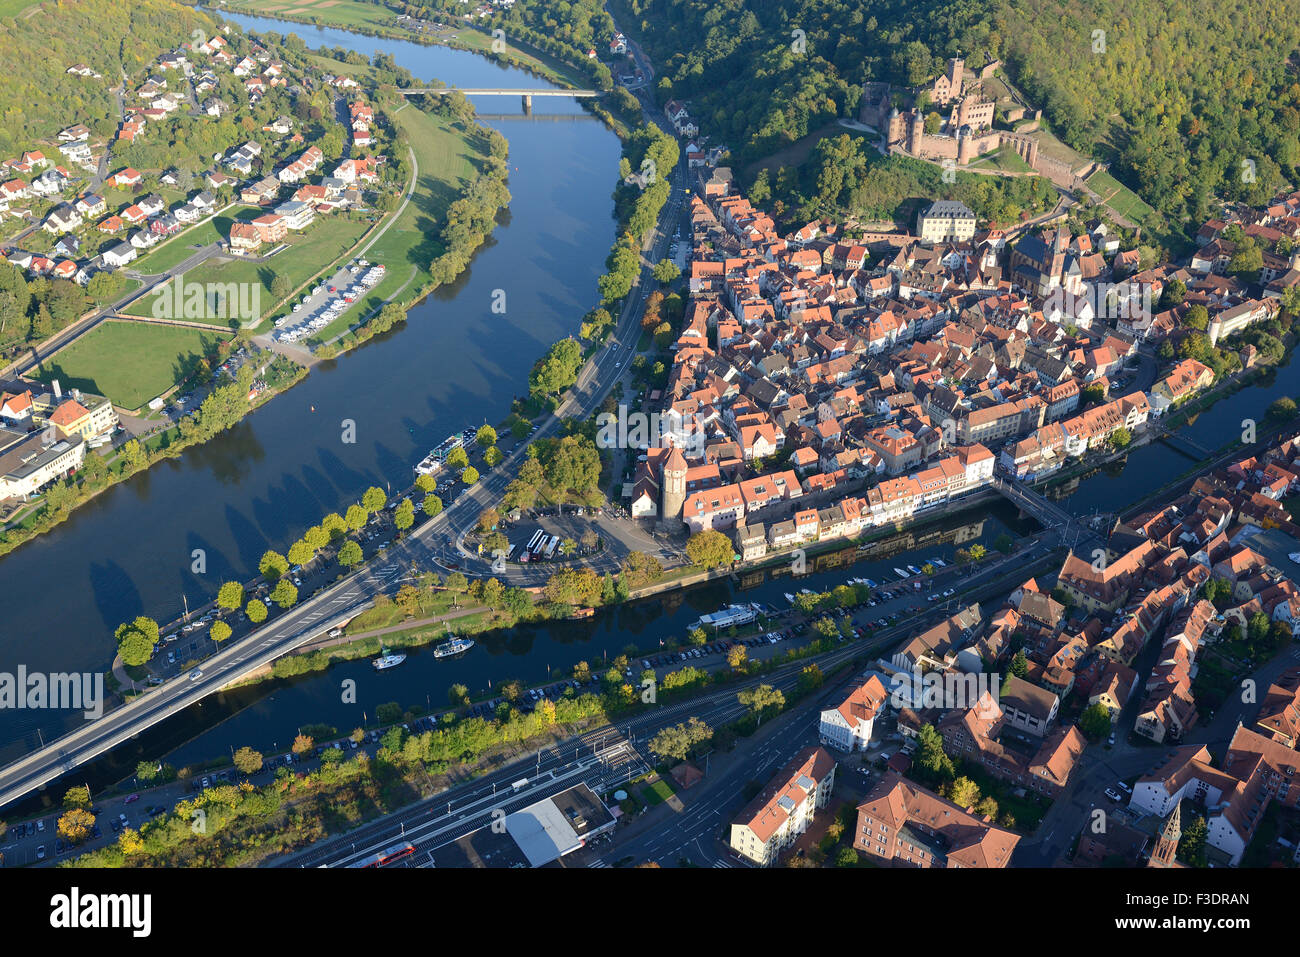 VISTA AÉREA. Ciudad medieval en la confluencia de los ríos Main (a la izquierda) y Tauber. Wertheim am Main, Baden-Württemberg, Alemania. Foto de stock